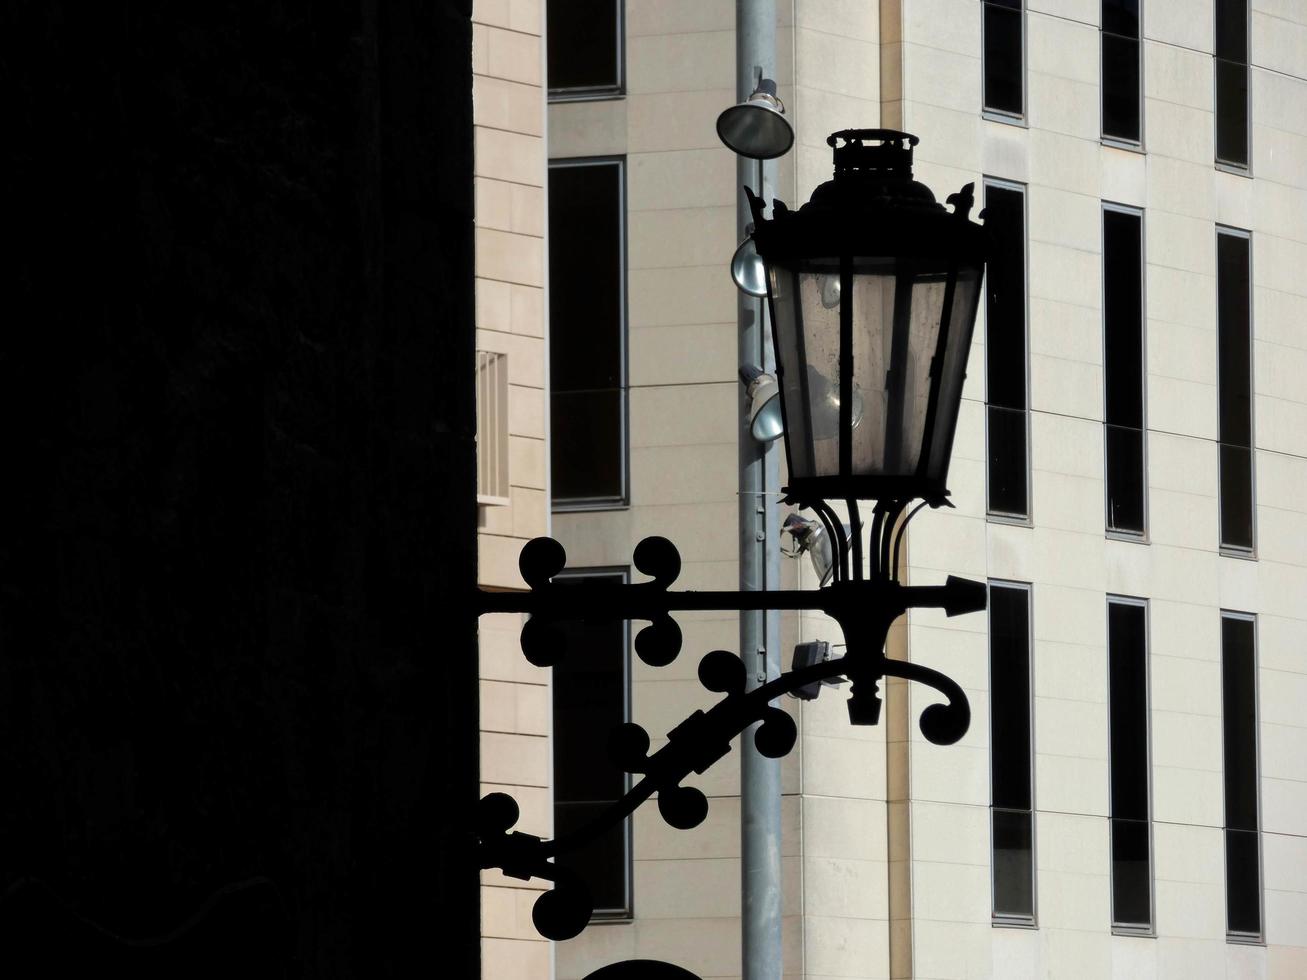 klassieke verlichte lamp in de gotische wijk van barcelona, spanje. foto